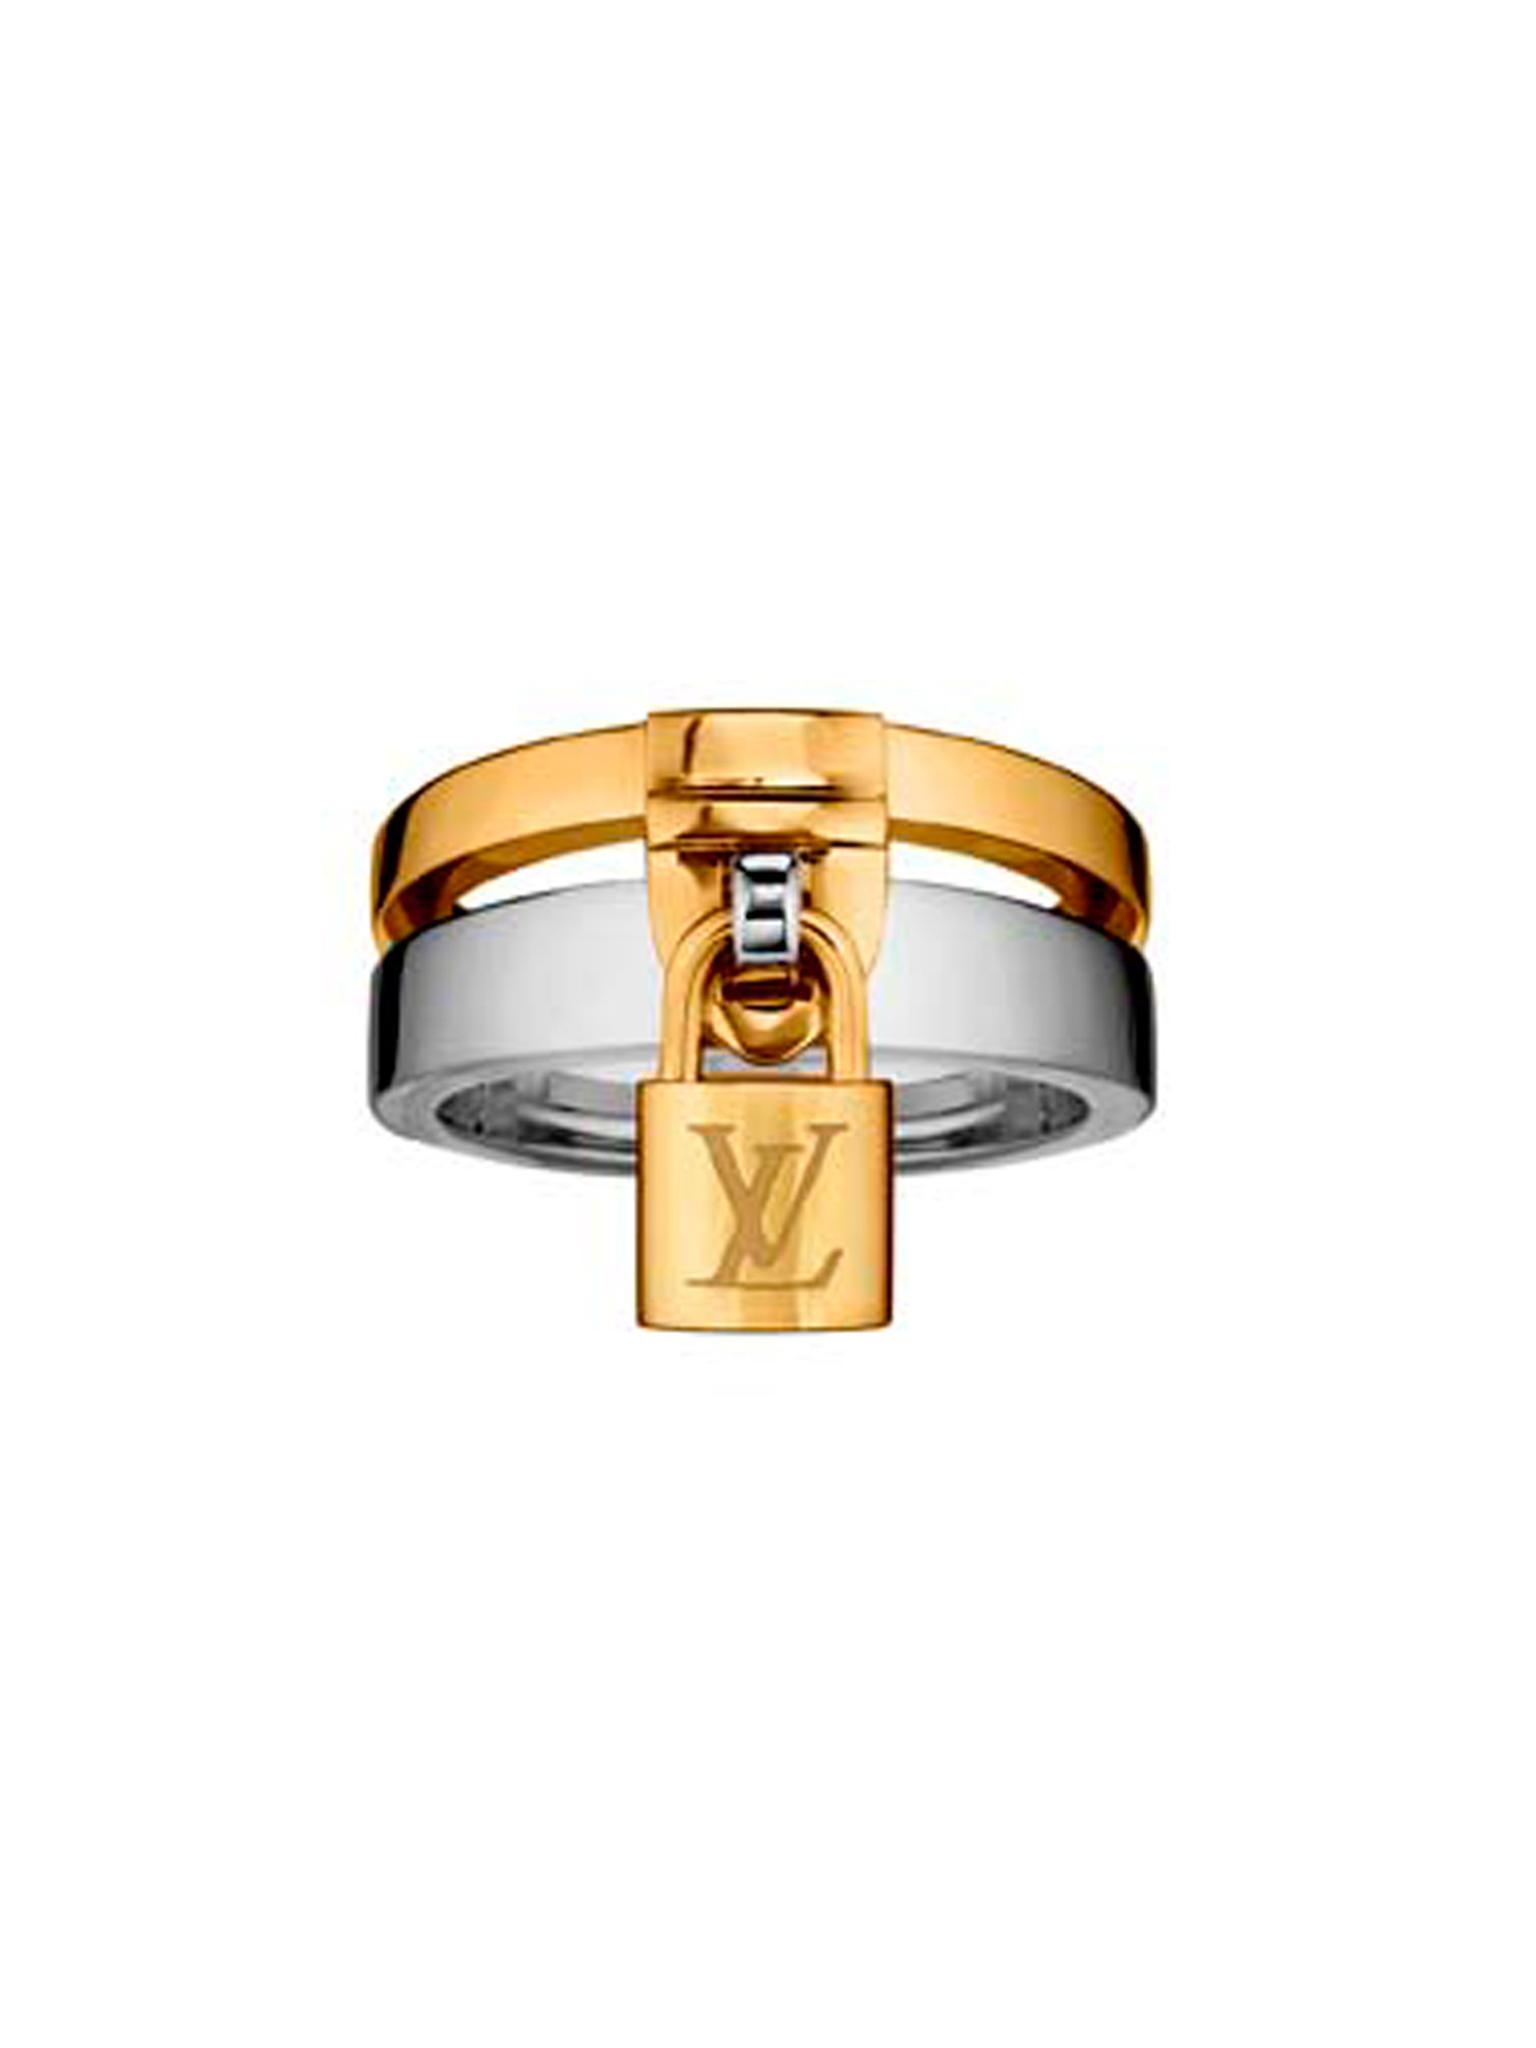 Lockit ring | Louis Vuitton | The 